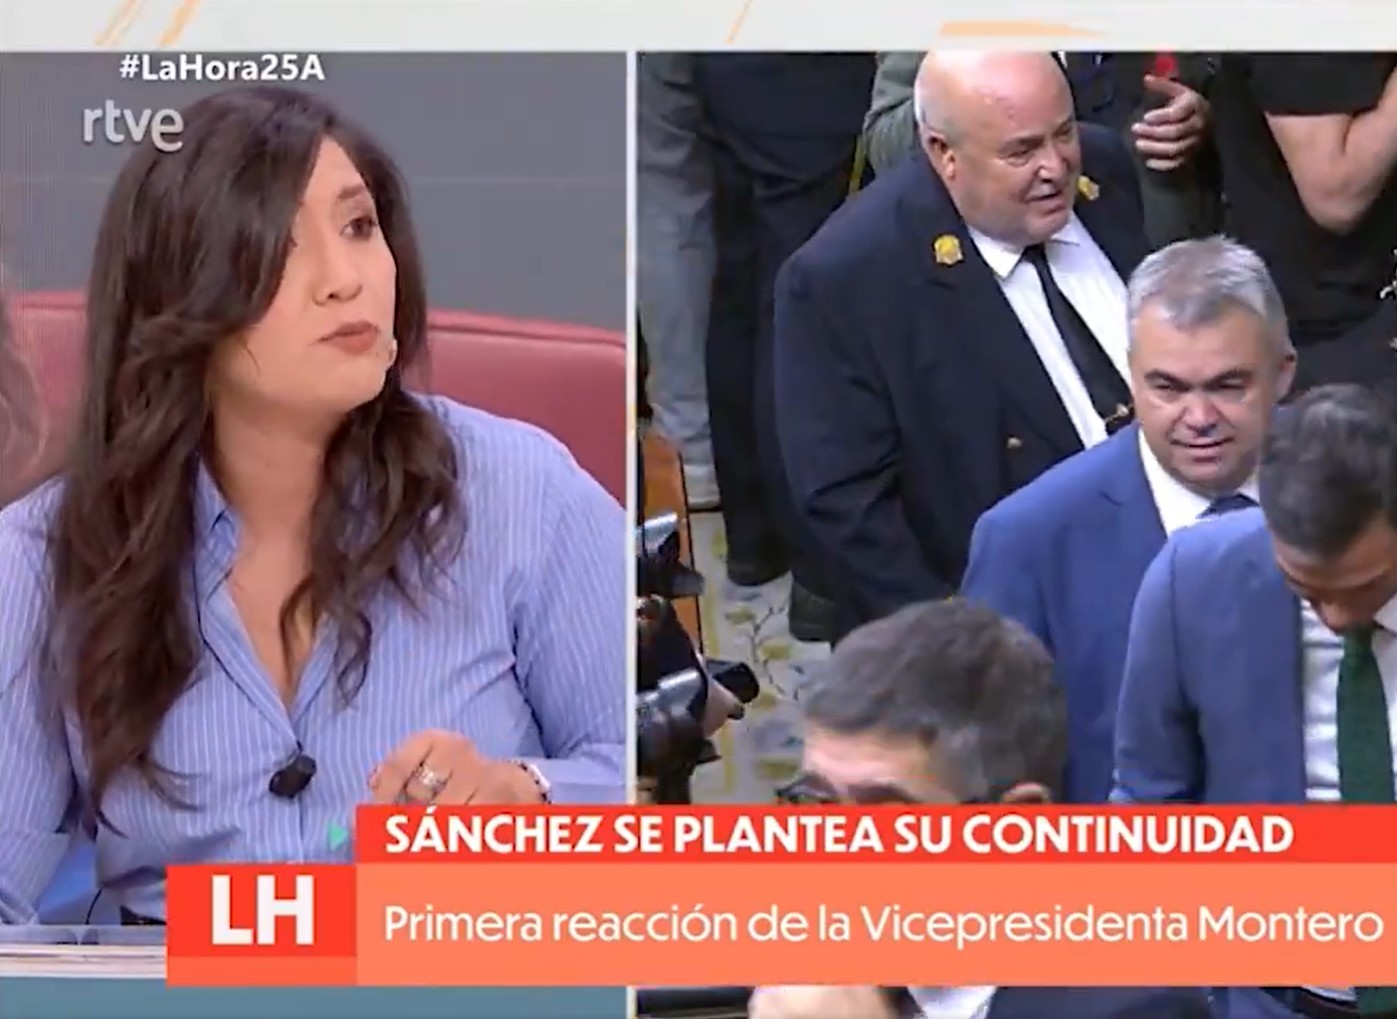 Una tertuliana de TVE llama a Sánchez a "actuar" tomando el poder judicial e interviniendo medios